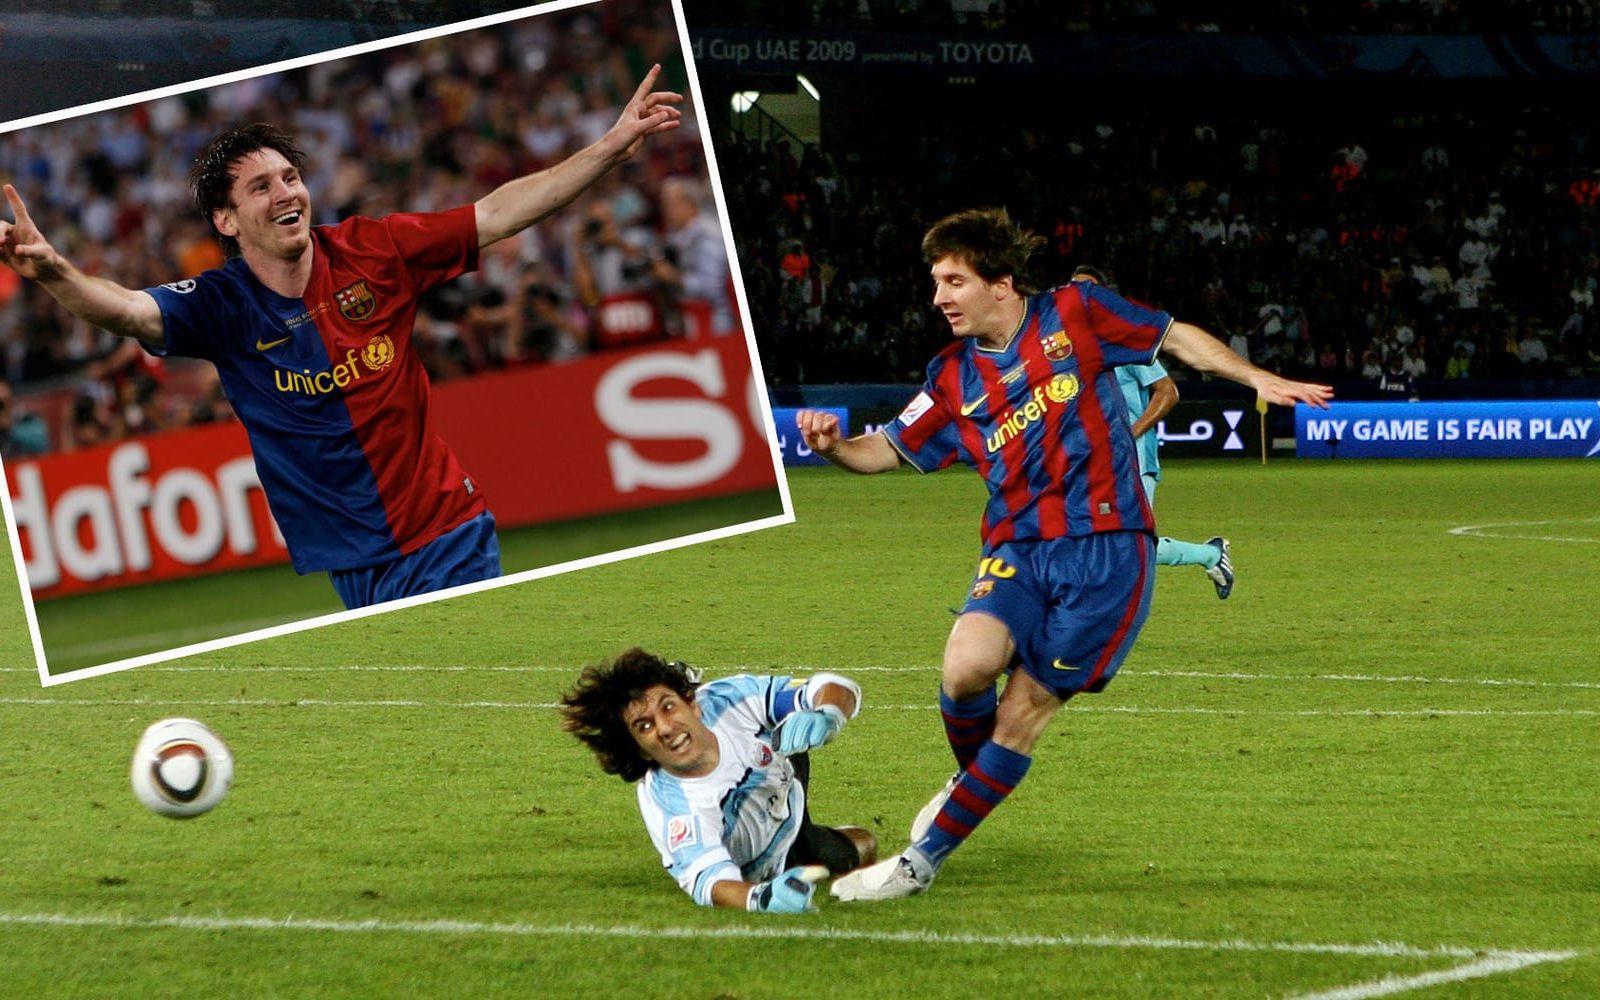 2009. Vinnare: Lionel Messi, Argentina och Barcelona. Den här gången var det ombytta roller och Criistiano Ronaldo slutade tvåa. Xavi, Bercelona och Spanien, kom trea. Foto: Bildbyrån